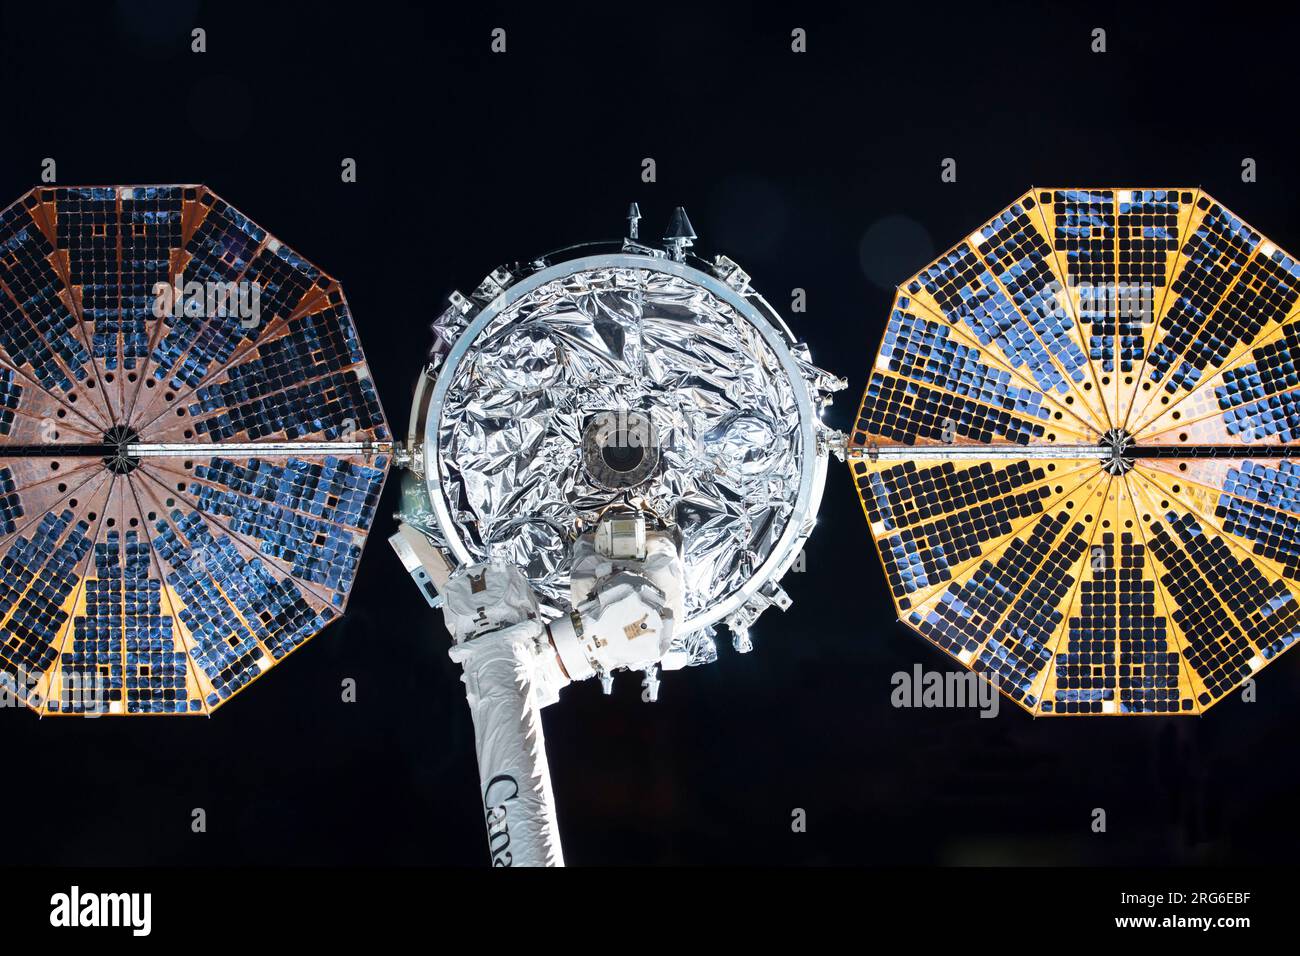 La navicella spaziale Cygnus nelle impugnature del braccio robotico Canadarm2. Foto Stock